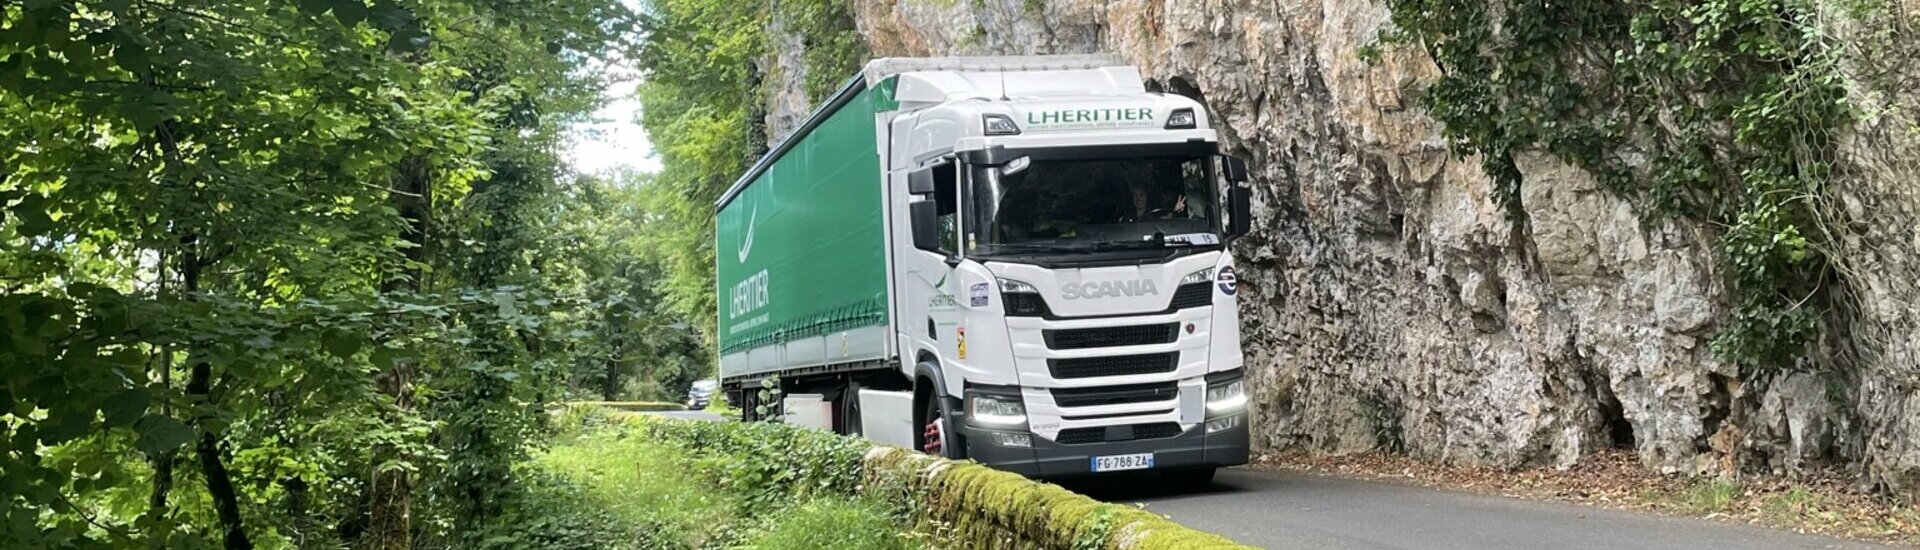 Transport Cantal Auvergne Lhéritier